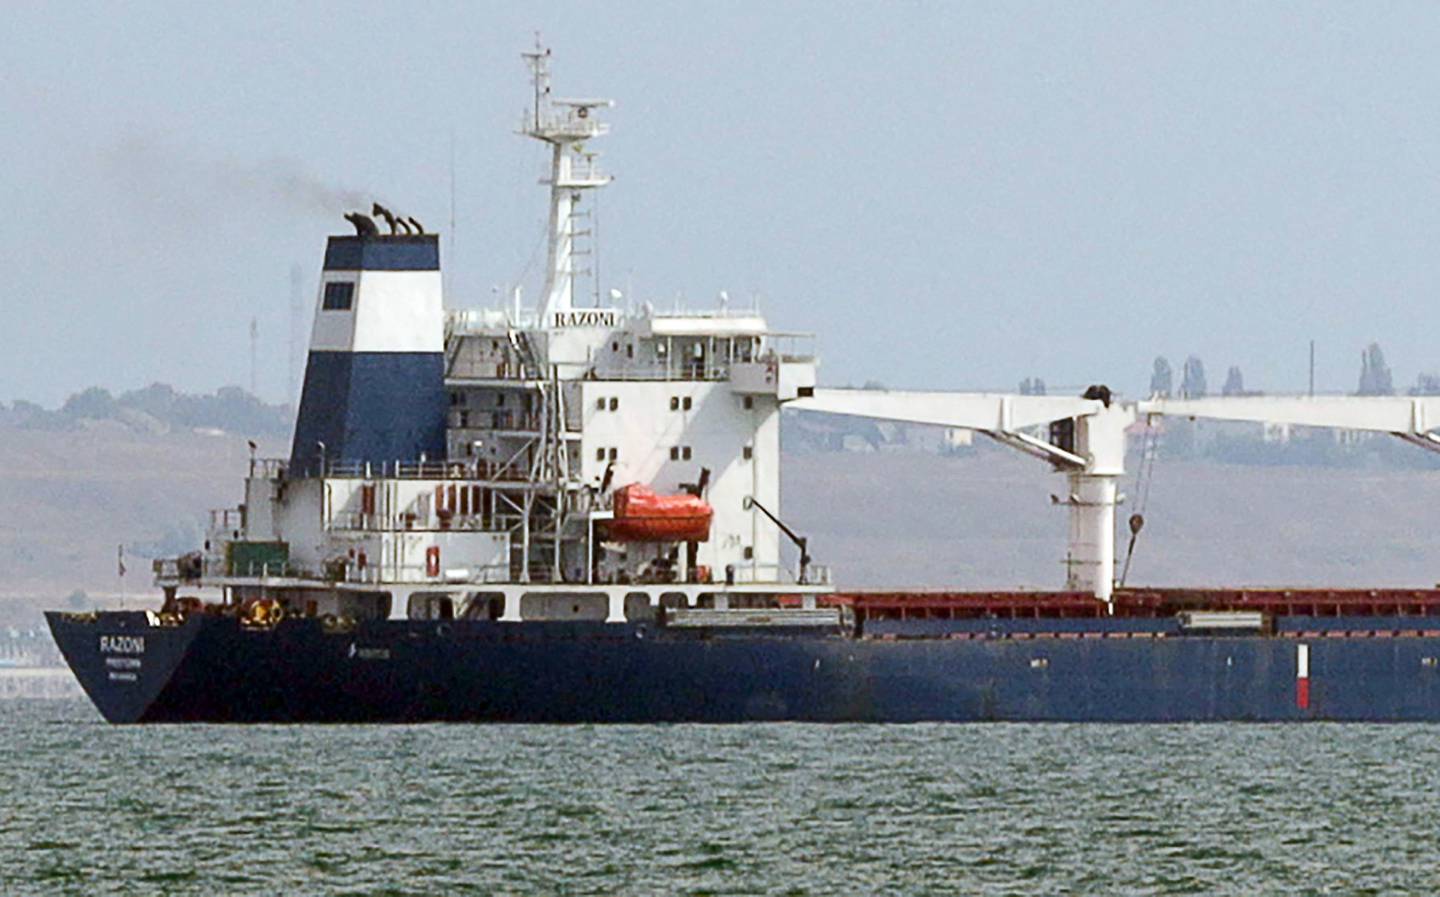 El granelero M/V Razoni, con un cargamento de 26.000 toneladas de maíz, sale del puerto ucraniano de Odessa, camino de Trípoli, Líbano, el 1 de agosto de 2022.